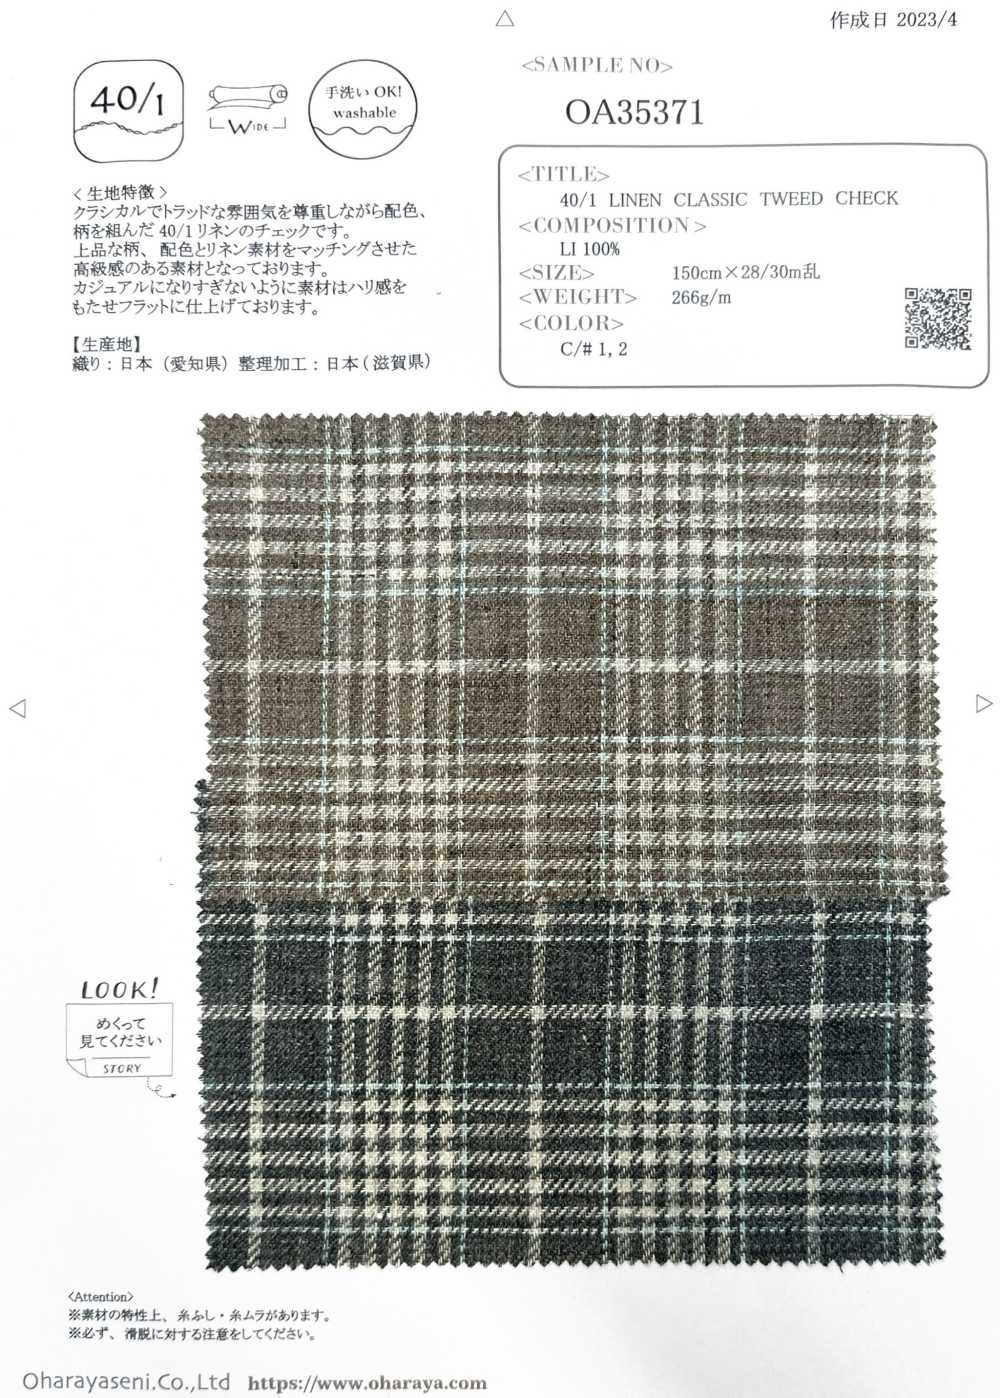 OA35371 40/1 LINEN CLASSIC TWEED CHECK[生地] 小原屋繊維